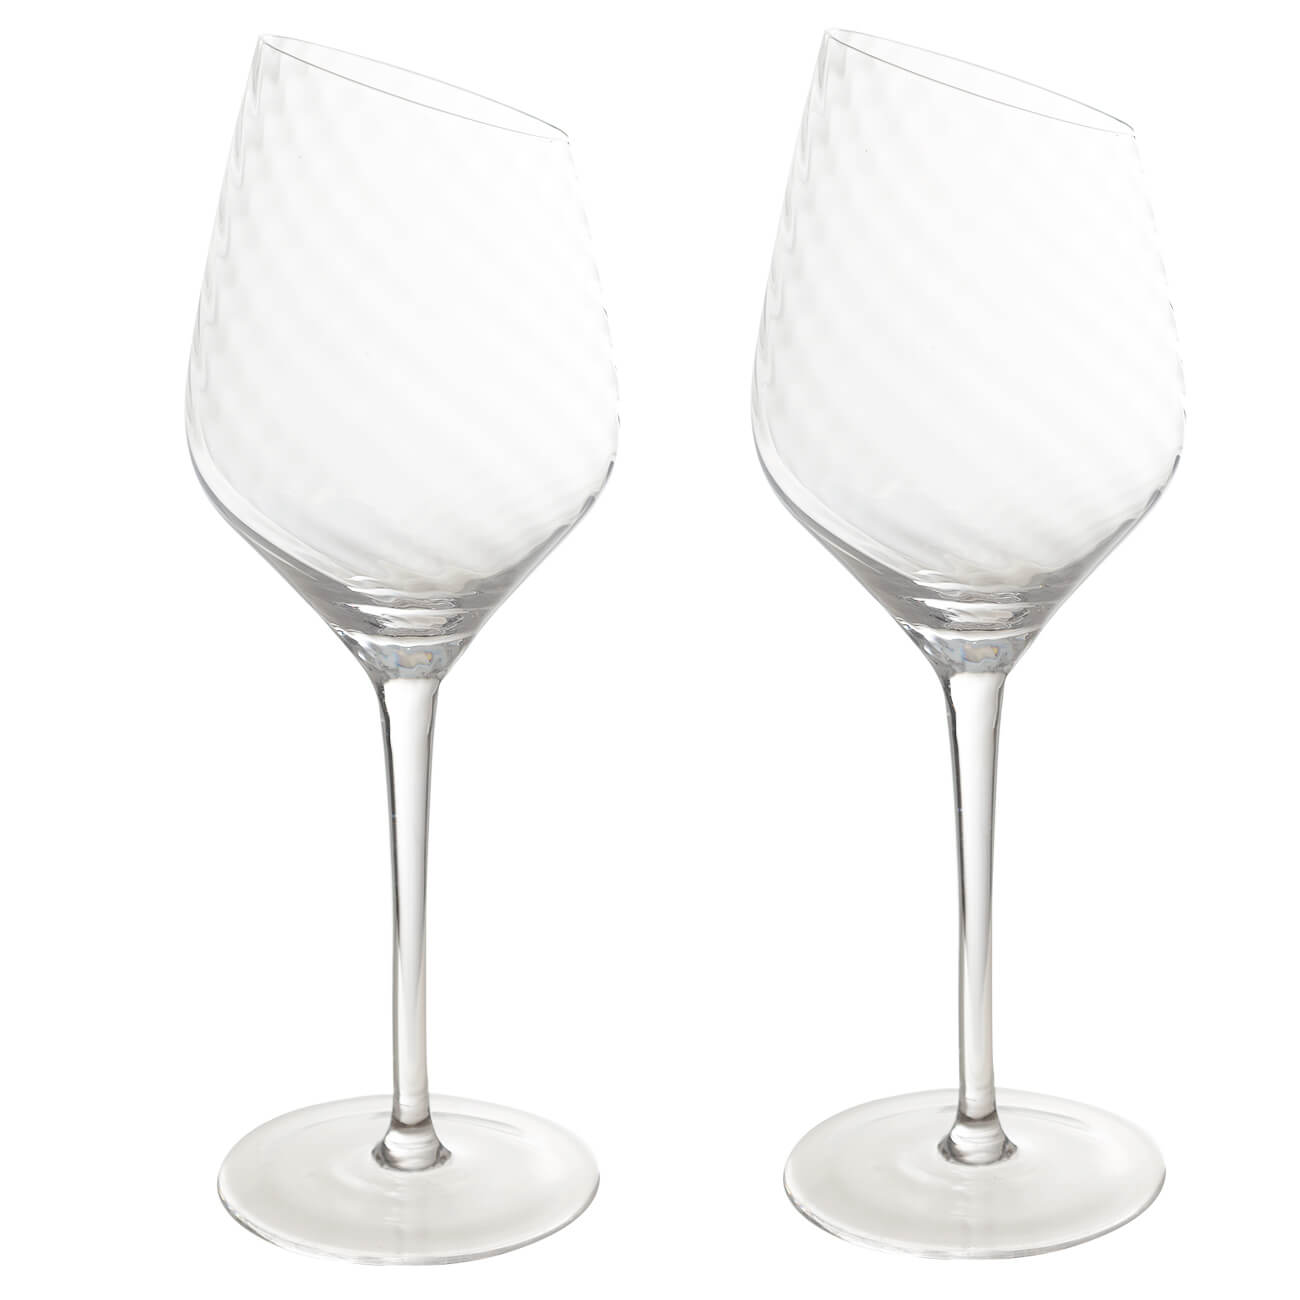 Бокал для белого вина, 460 мл, 2 шт, стекло, Charm V стакан 400 мл 4 шт стекло перламутр charm l polar